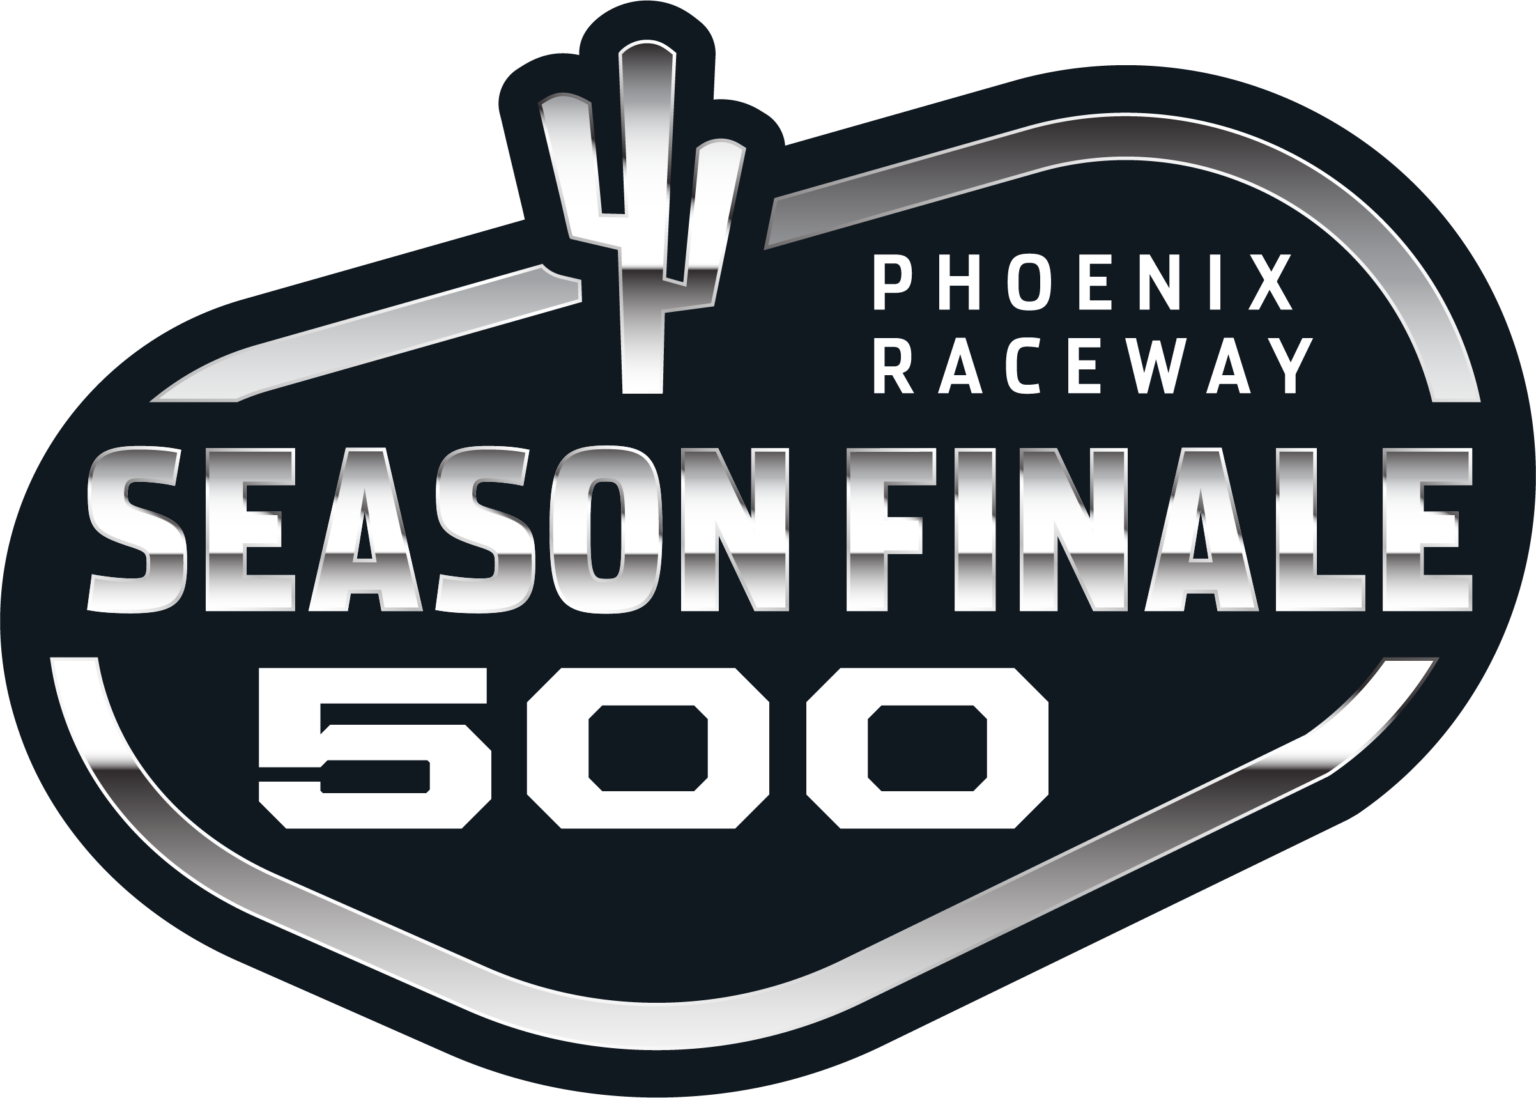 2022 Season Finale 500 Race Picks